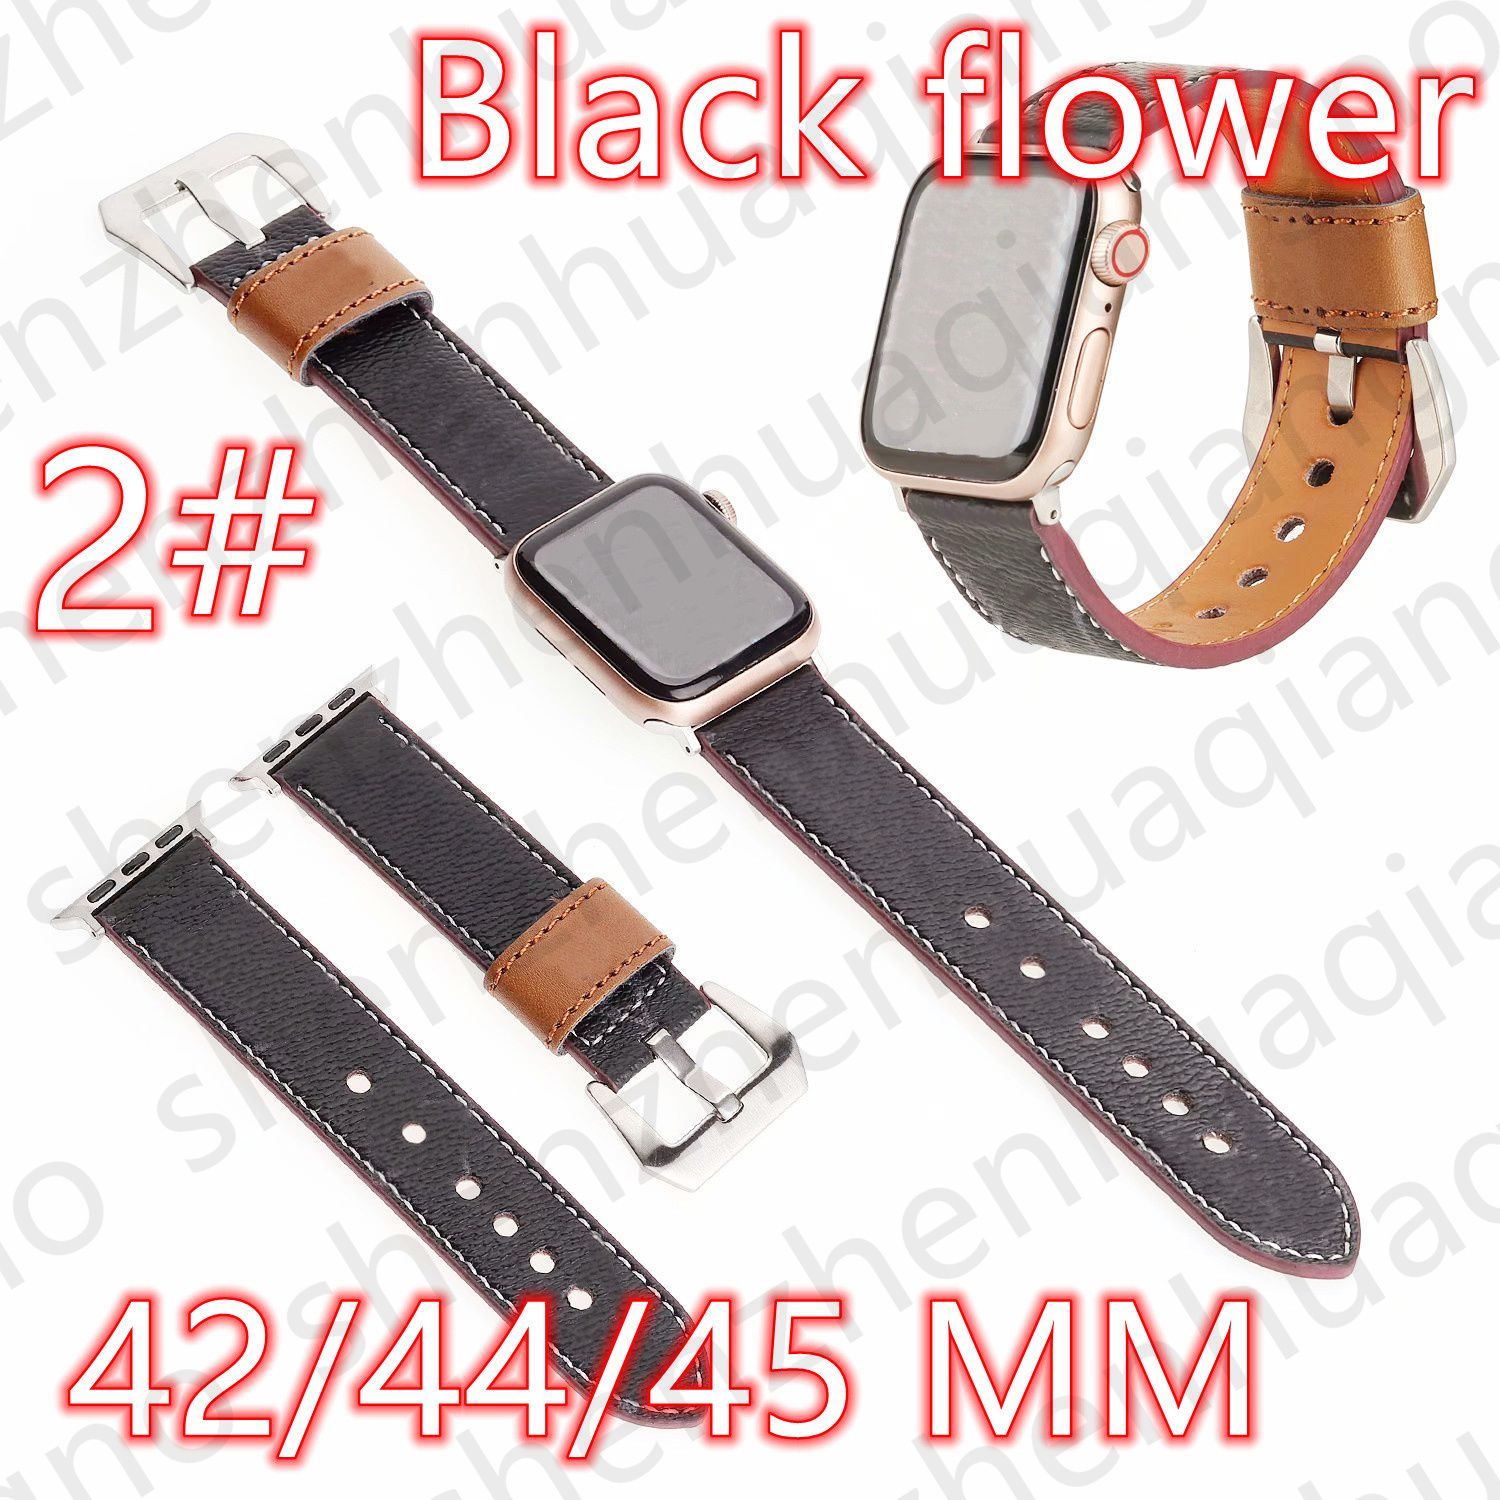 2 # 42/44/45/49mm Black Flower V Logo